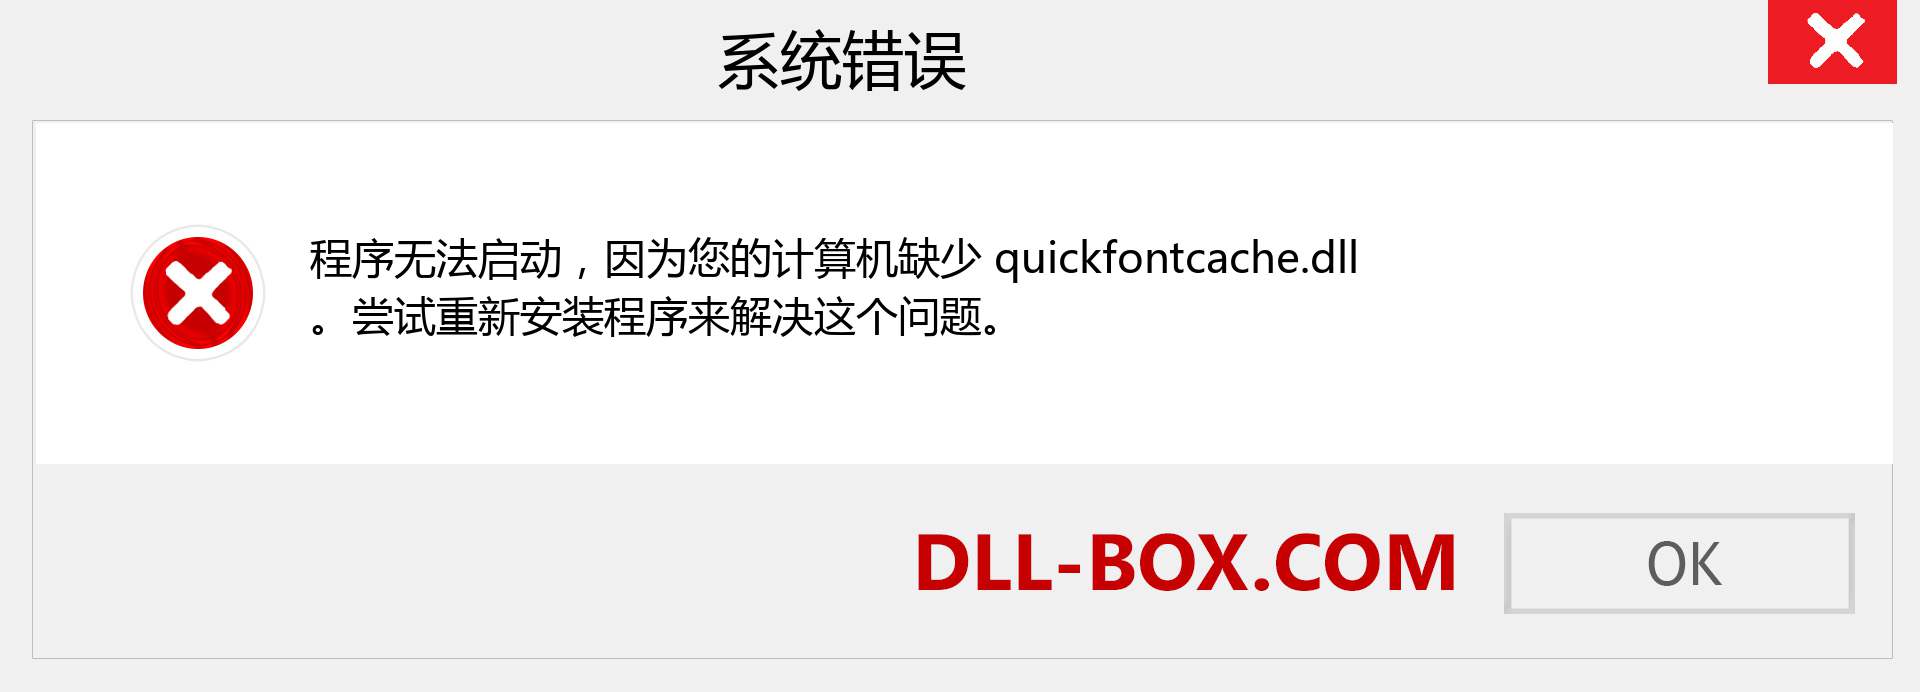 quickfontcache.dll 文件丢失？。 适用于 Windows 7、8、10 的下载 - 修复 Windows、照片、图像上的 quickfontcache dll 丢失错误